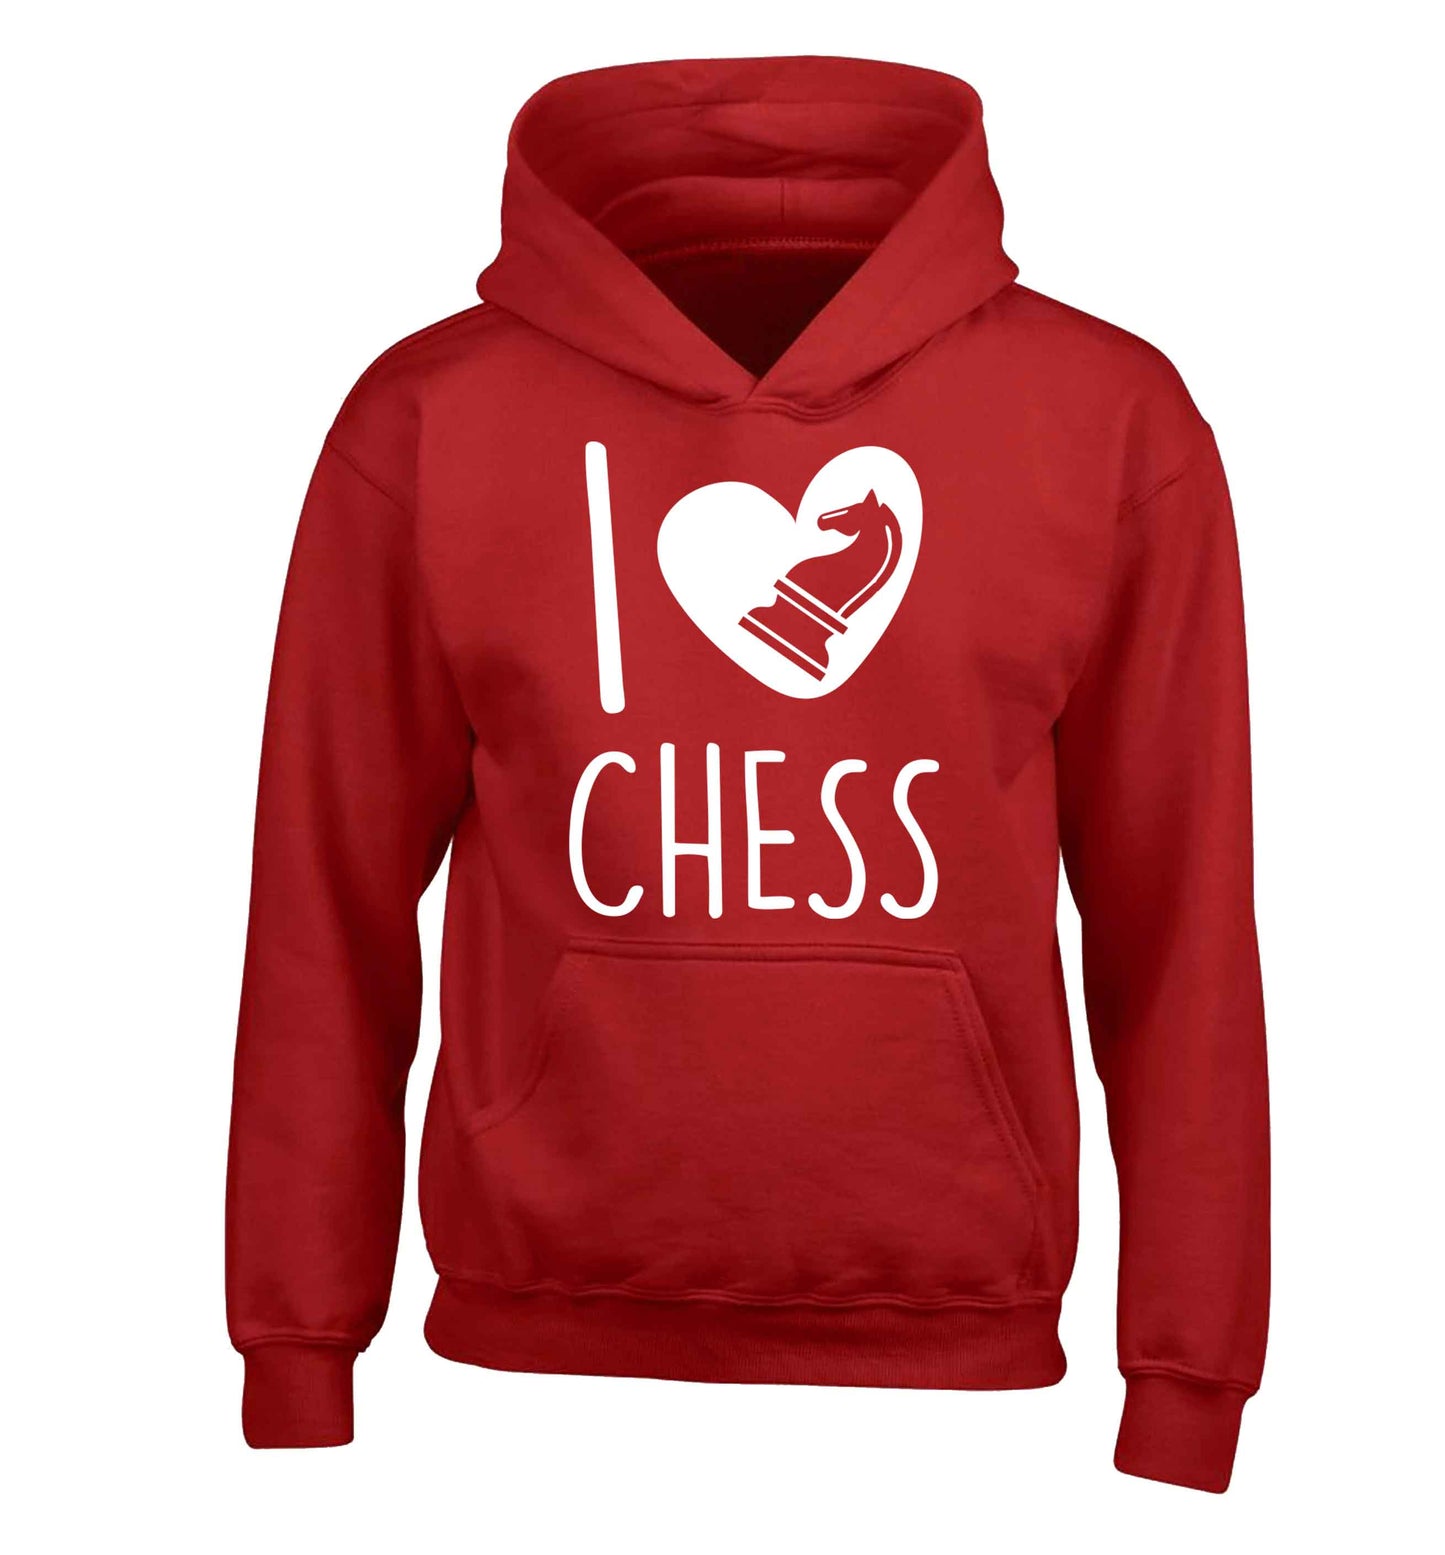 I love chess children's red hoodie 12-13 Years